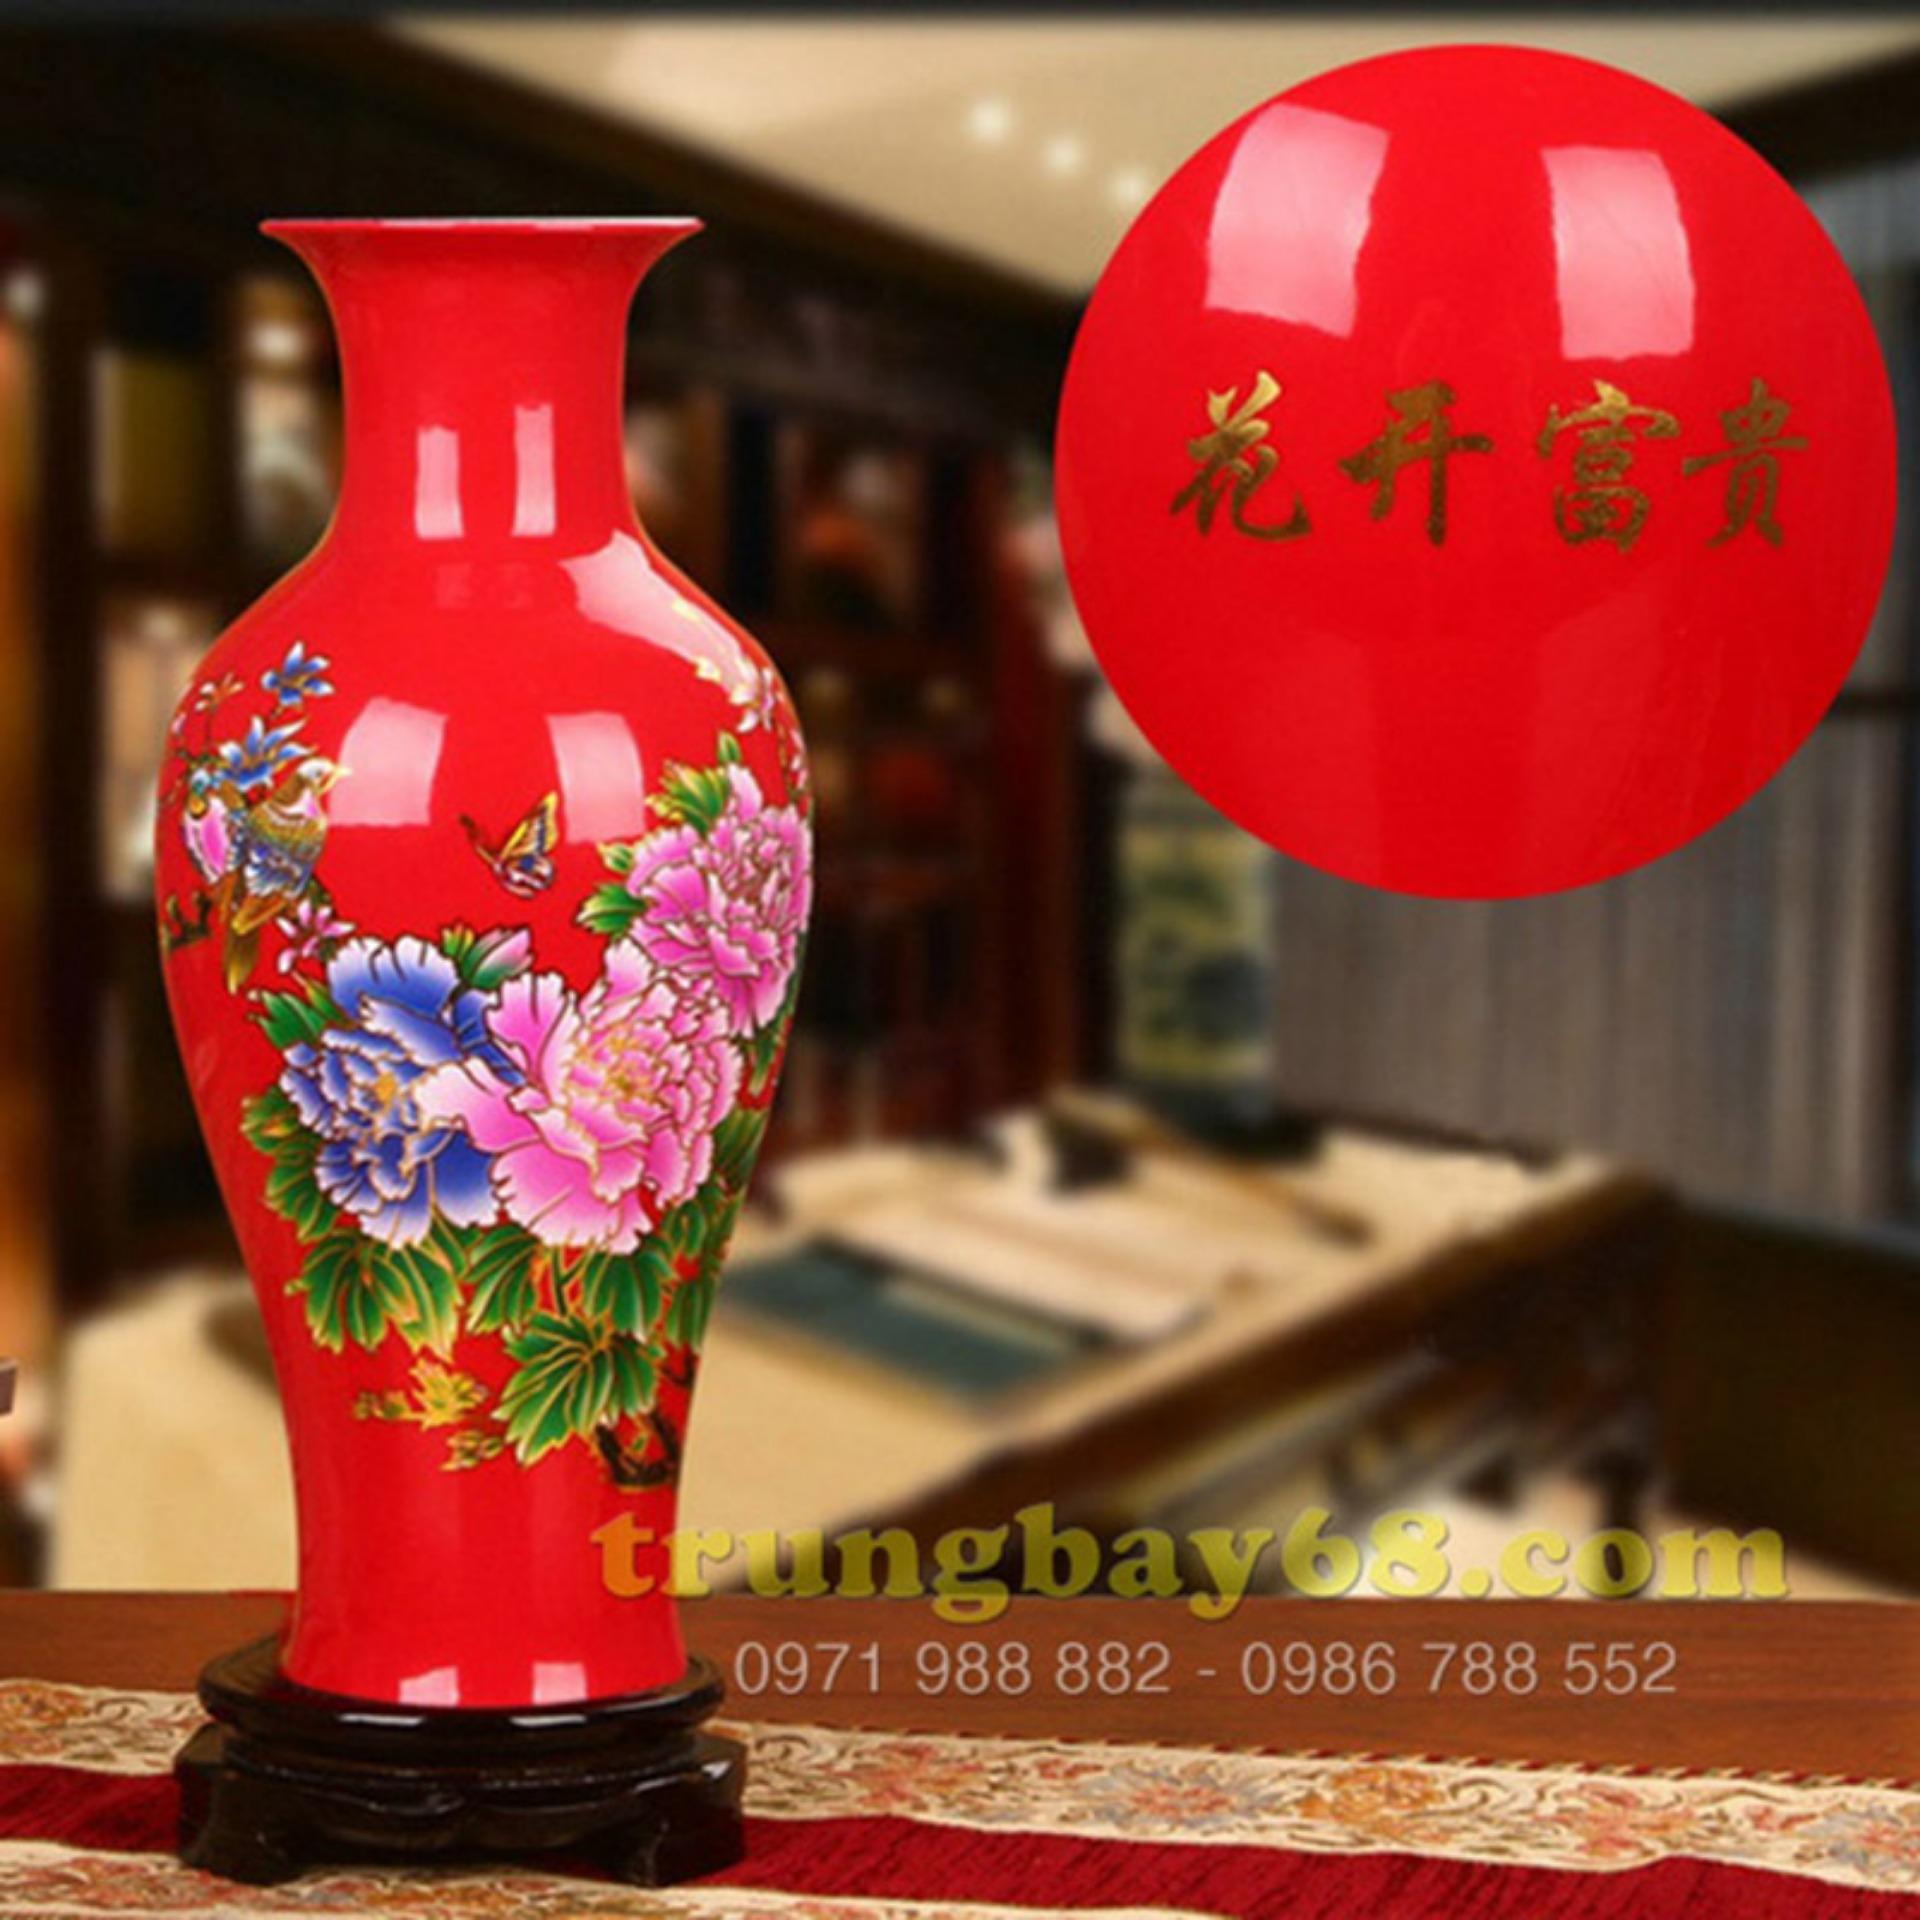 Bình hoa gốm sứ màu đỏ, dùng trang trí cho ngôi nhà của bạn, MS-xzgh007-R-1